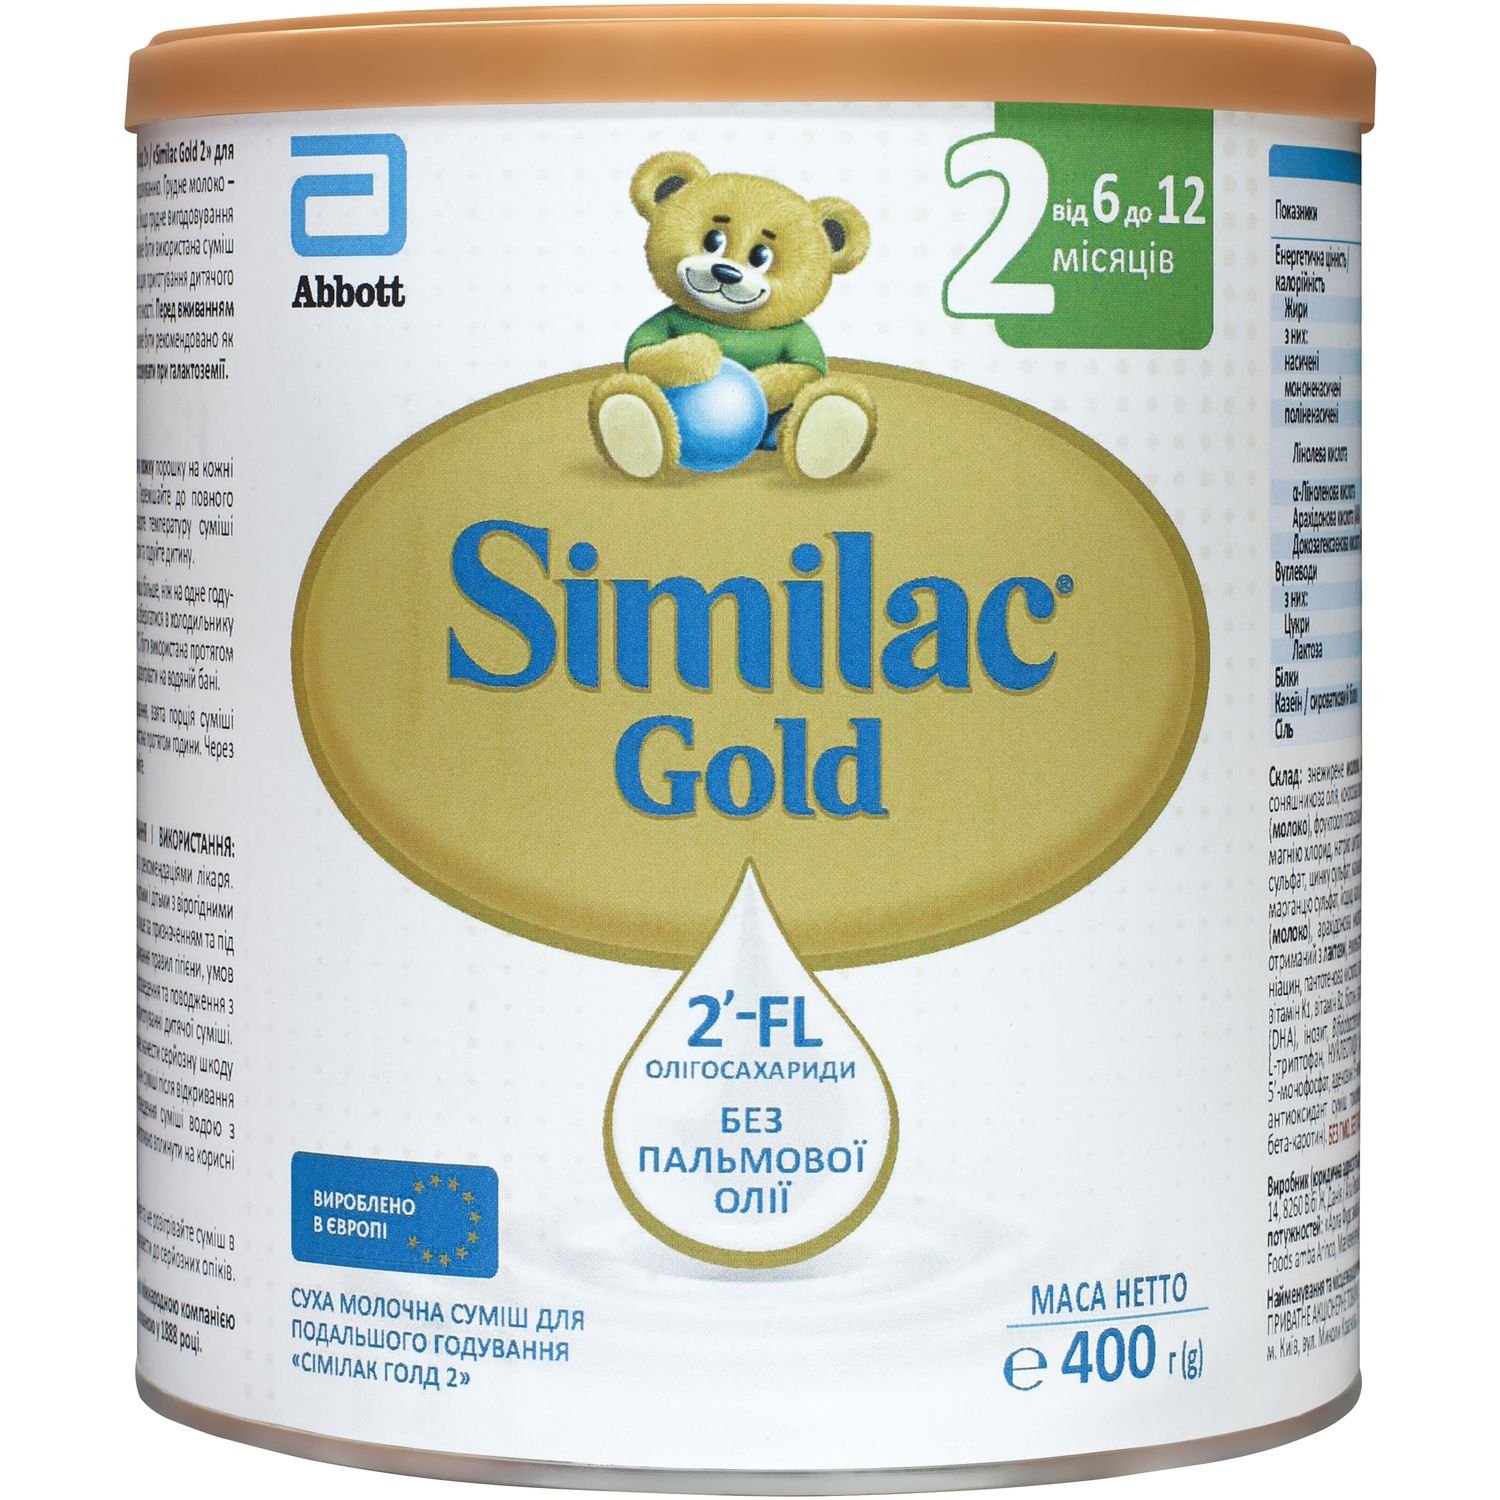 Суха молочна суміш Similac Gold 2, 400 г - фото 1